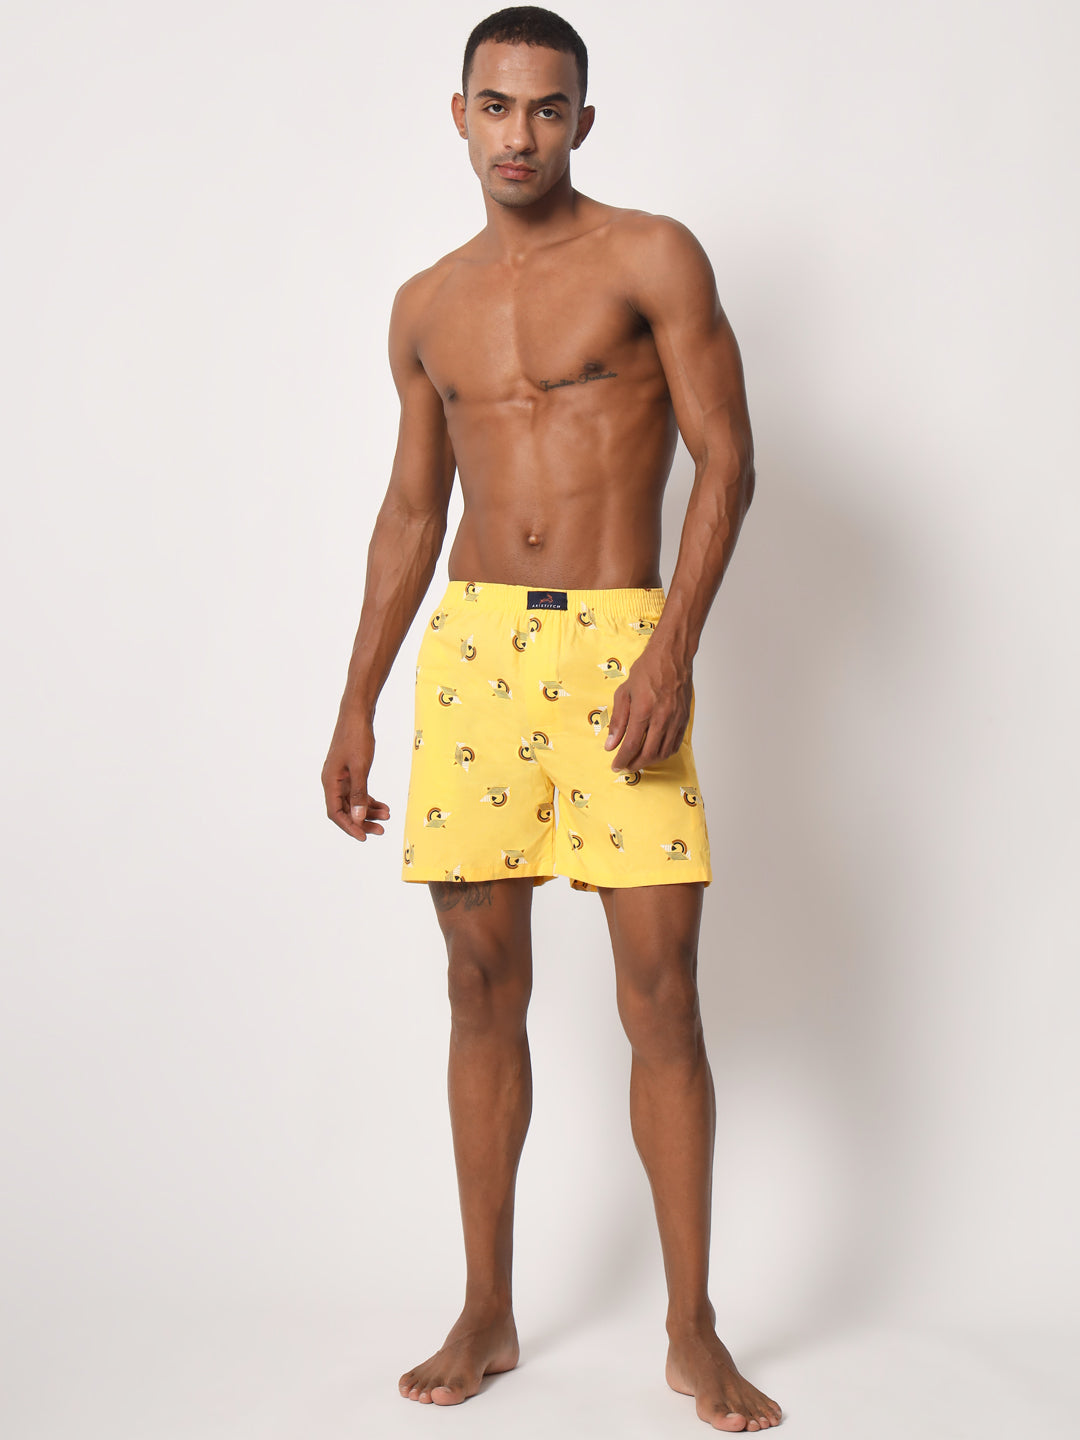 Lemon Yellow Printed Boxer for Men Soft feel